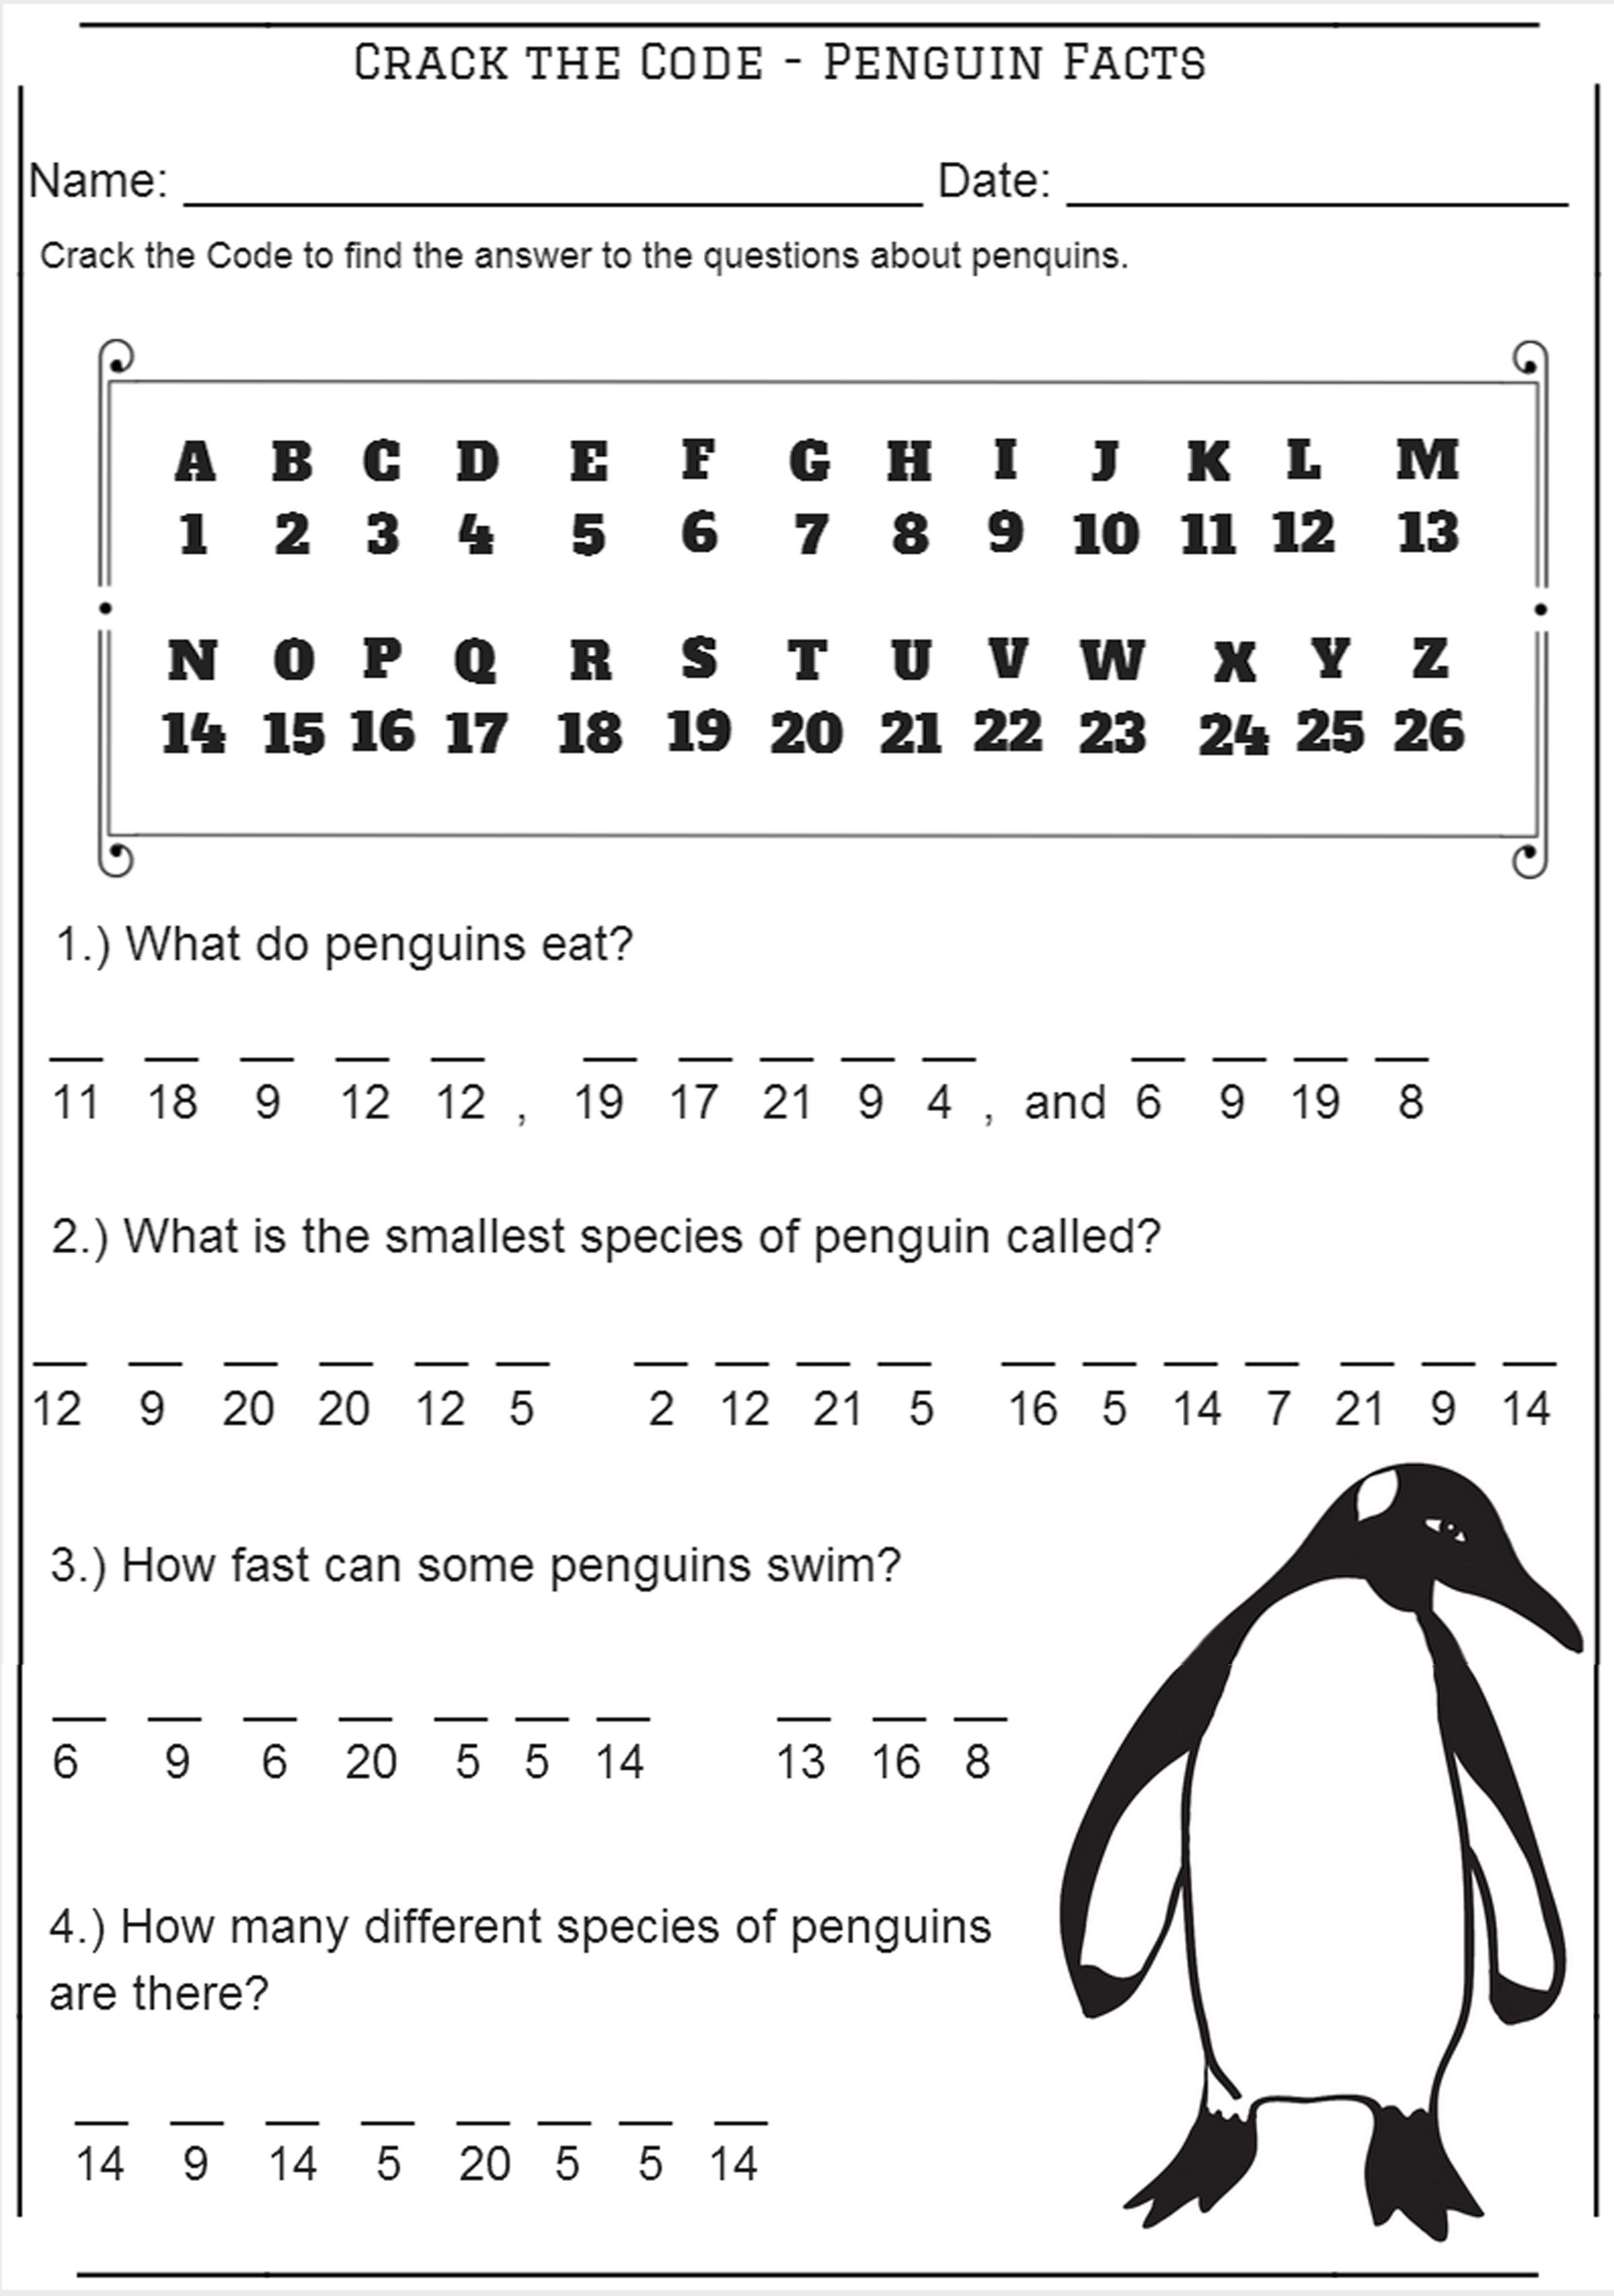 Crack The Code - Penguin Facts - Codebreaker Worksheet | Free | Crack The Code Worksheets Printable Free